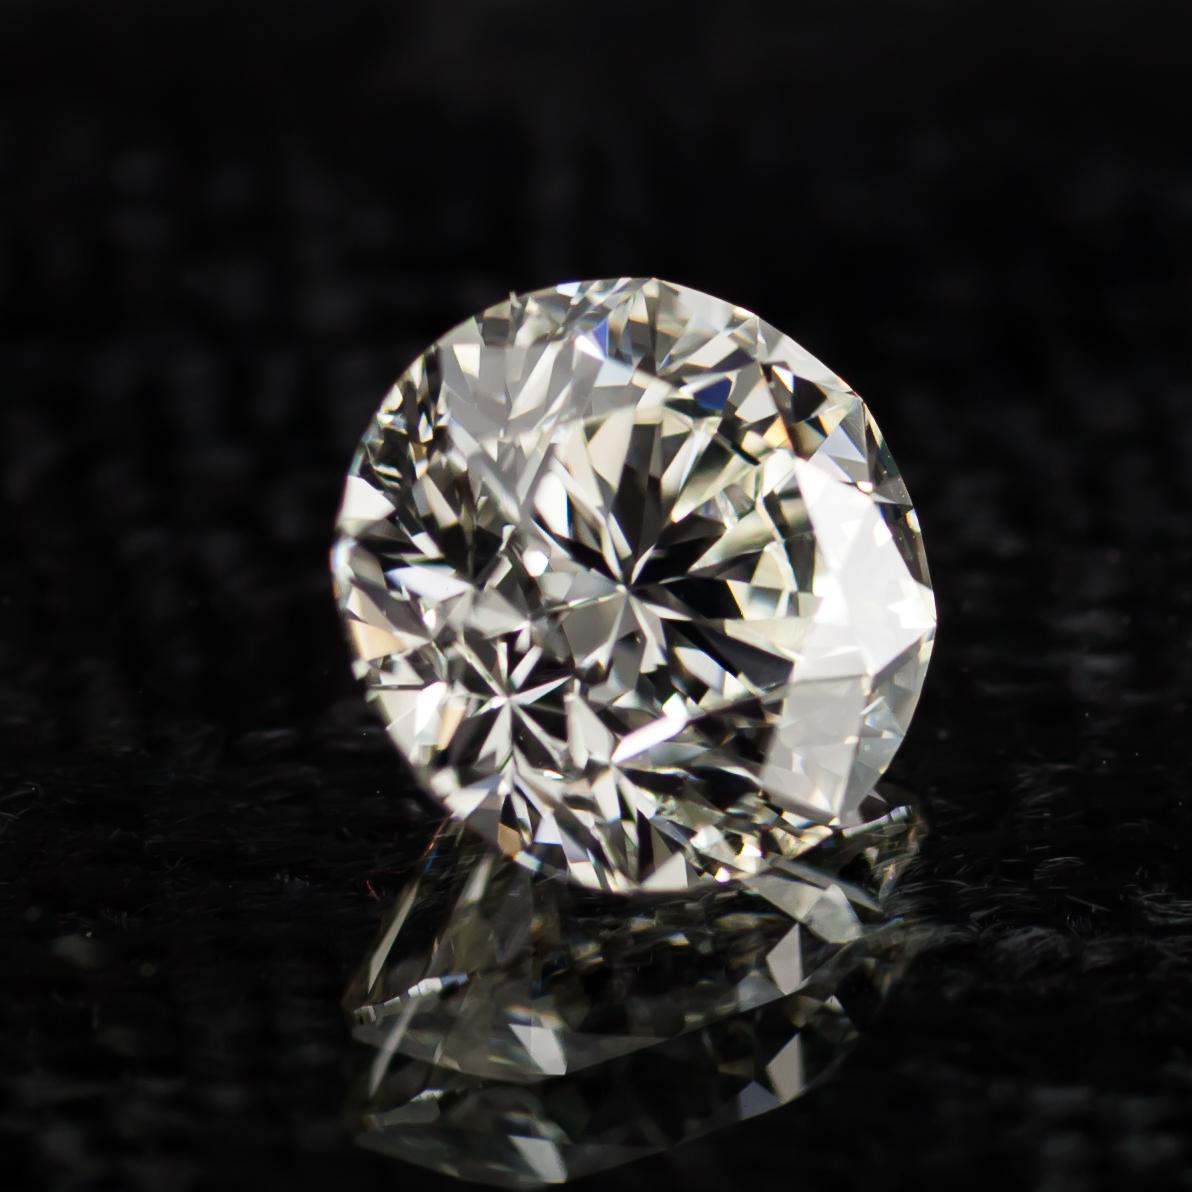 Informations générales sur le diamant
Taille du diamant : Brilliante ronde
Dimensions : 7.91  x  7.84  -  5.15 mm

Résultats de la classification des diamants
Poids en carats : 2,01
Classe de couleur : K
Grade de clarté : VS1

Informations